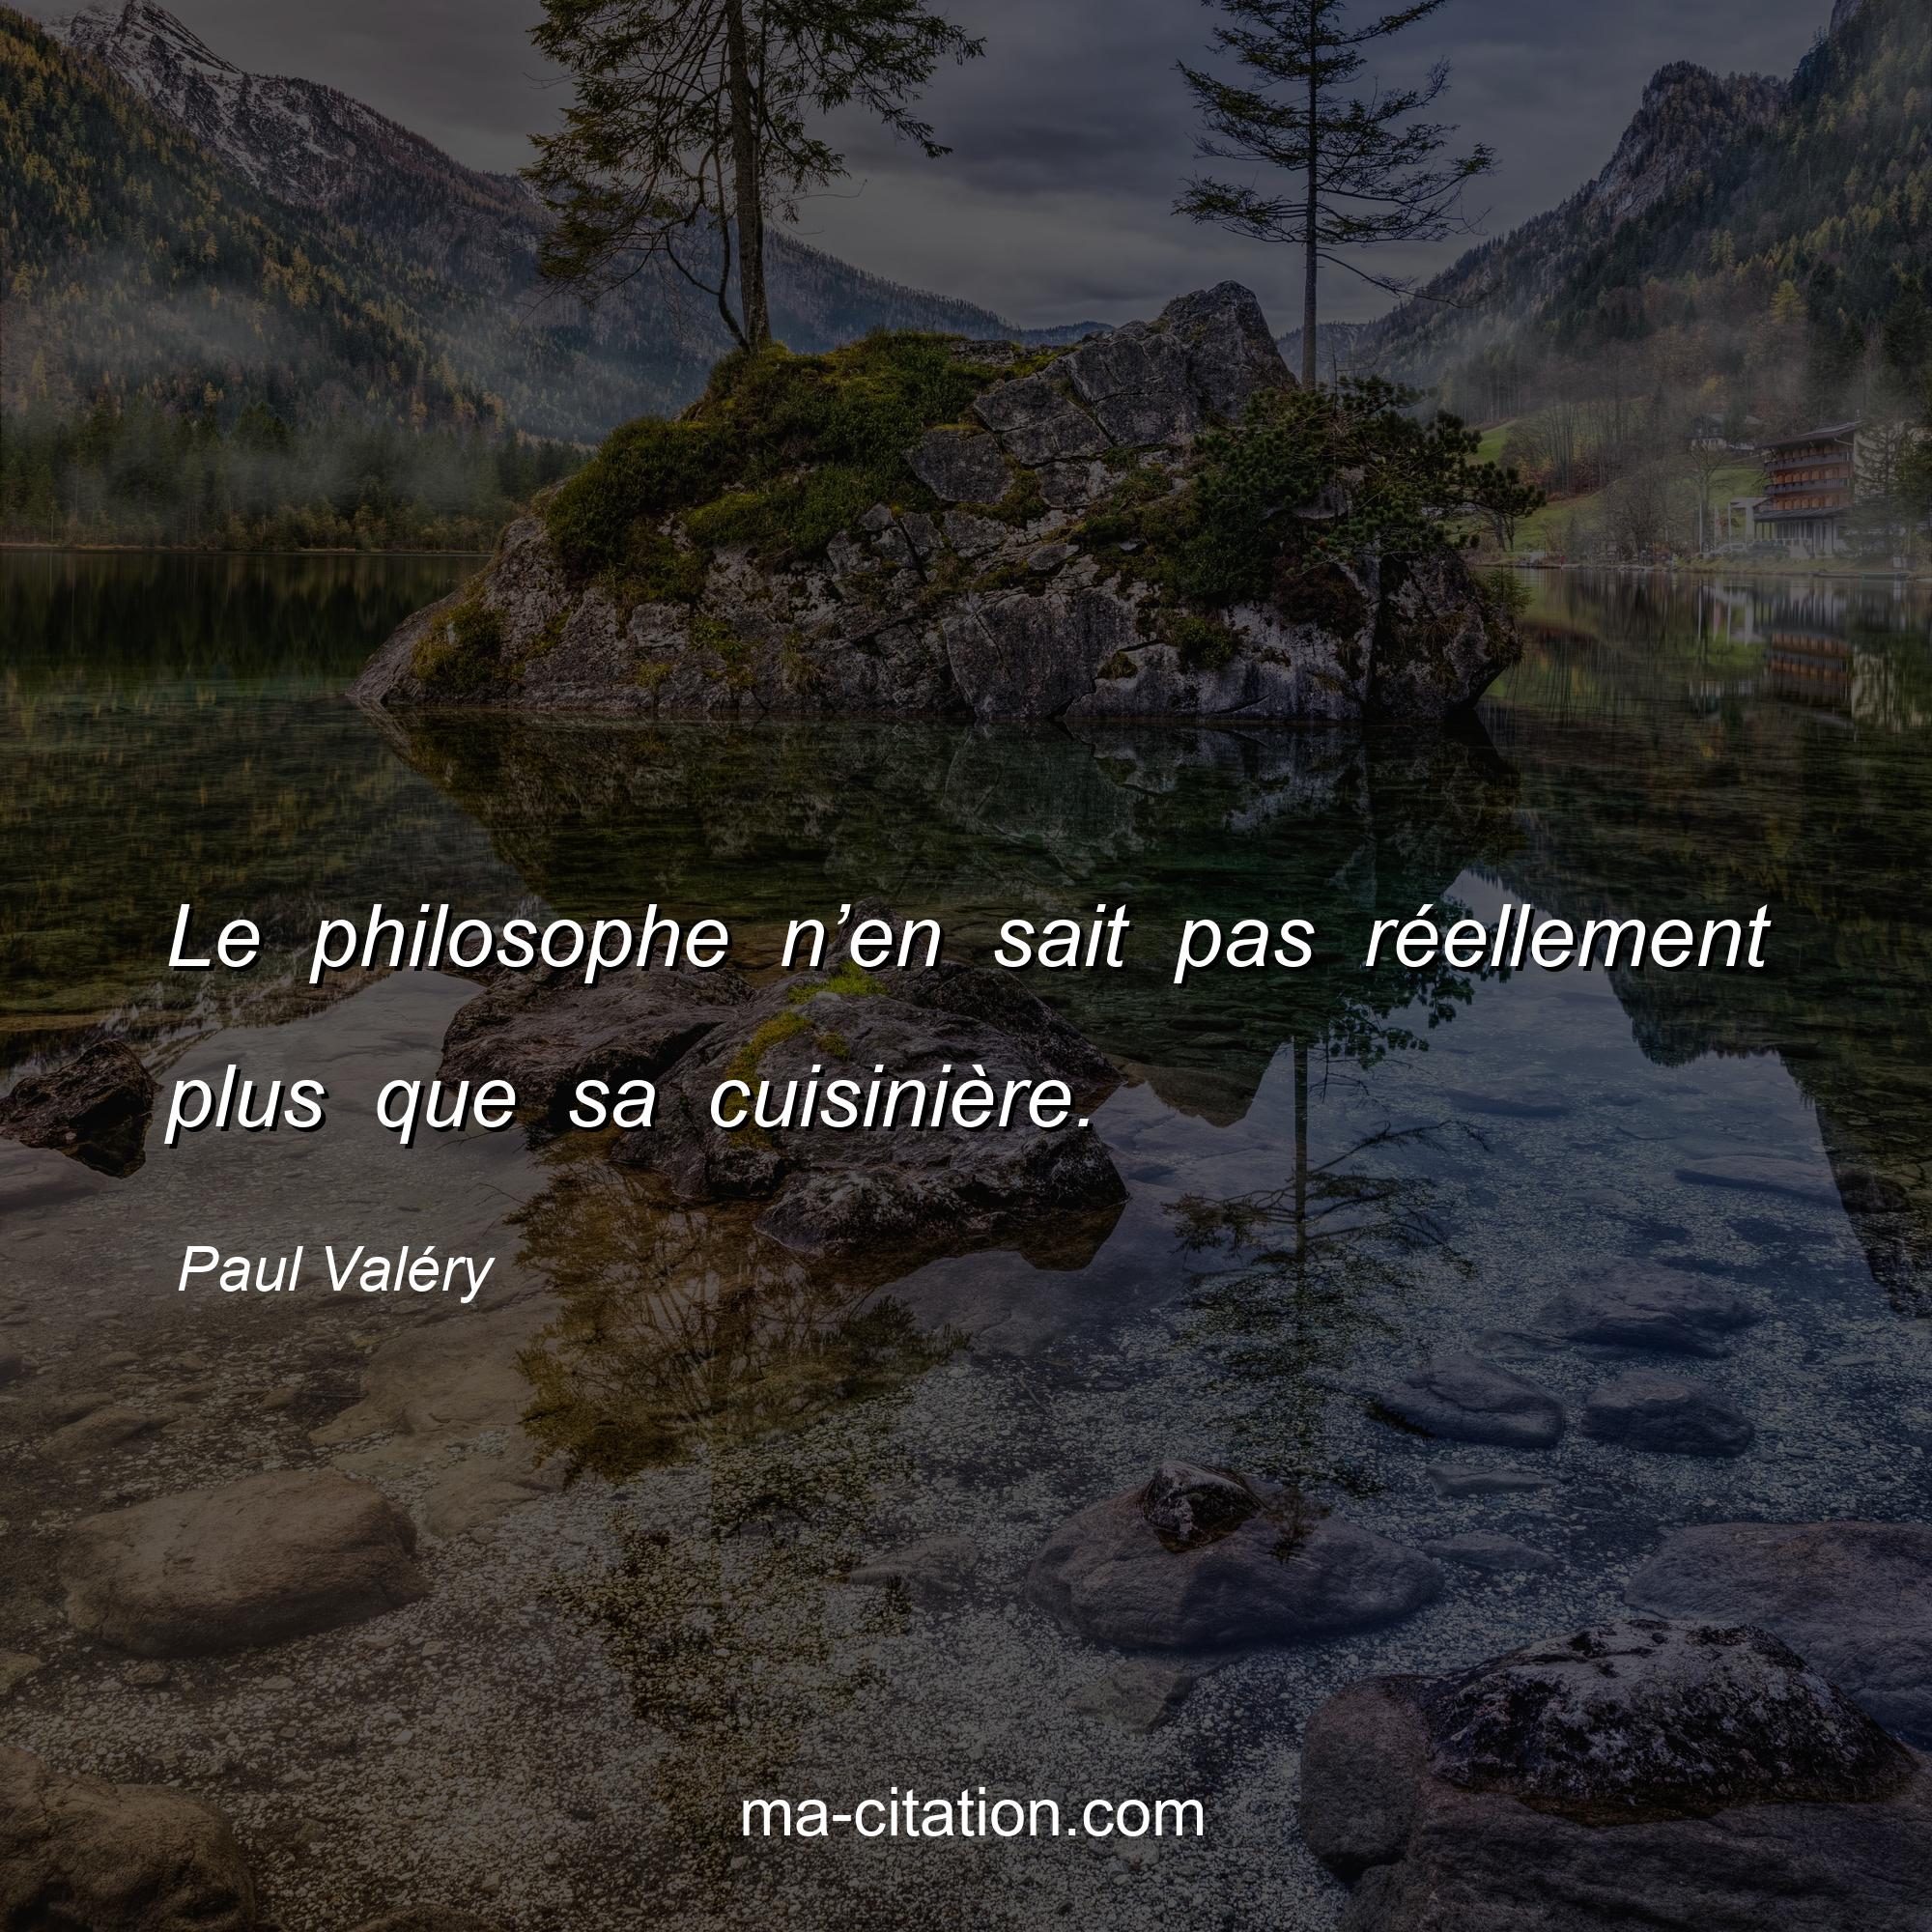 Paul Valéry : Le philosophe n’en sait pas réellement plus que sa cuisinière.